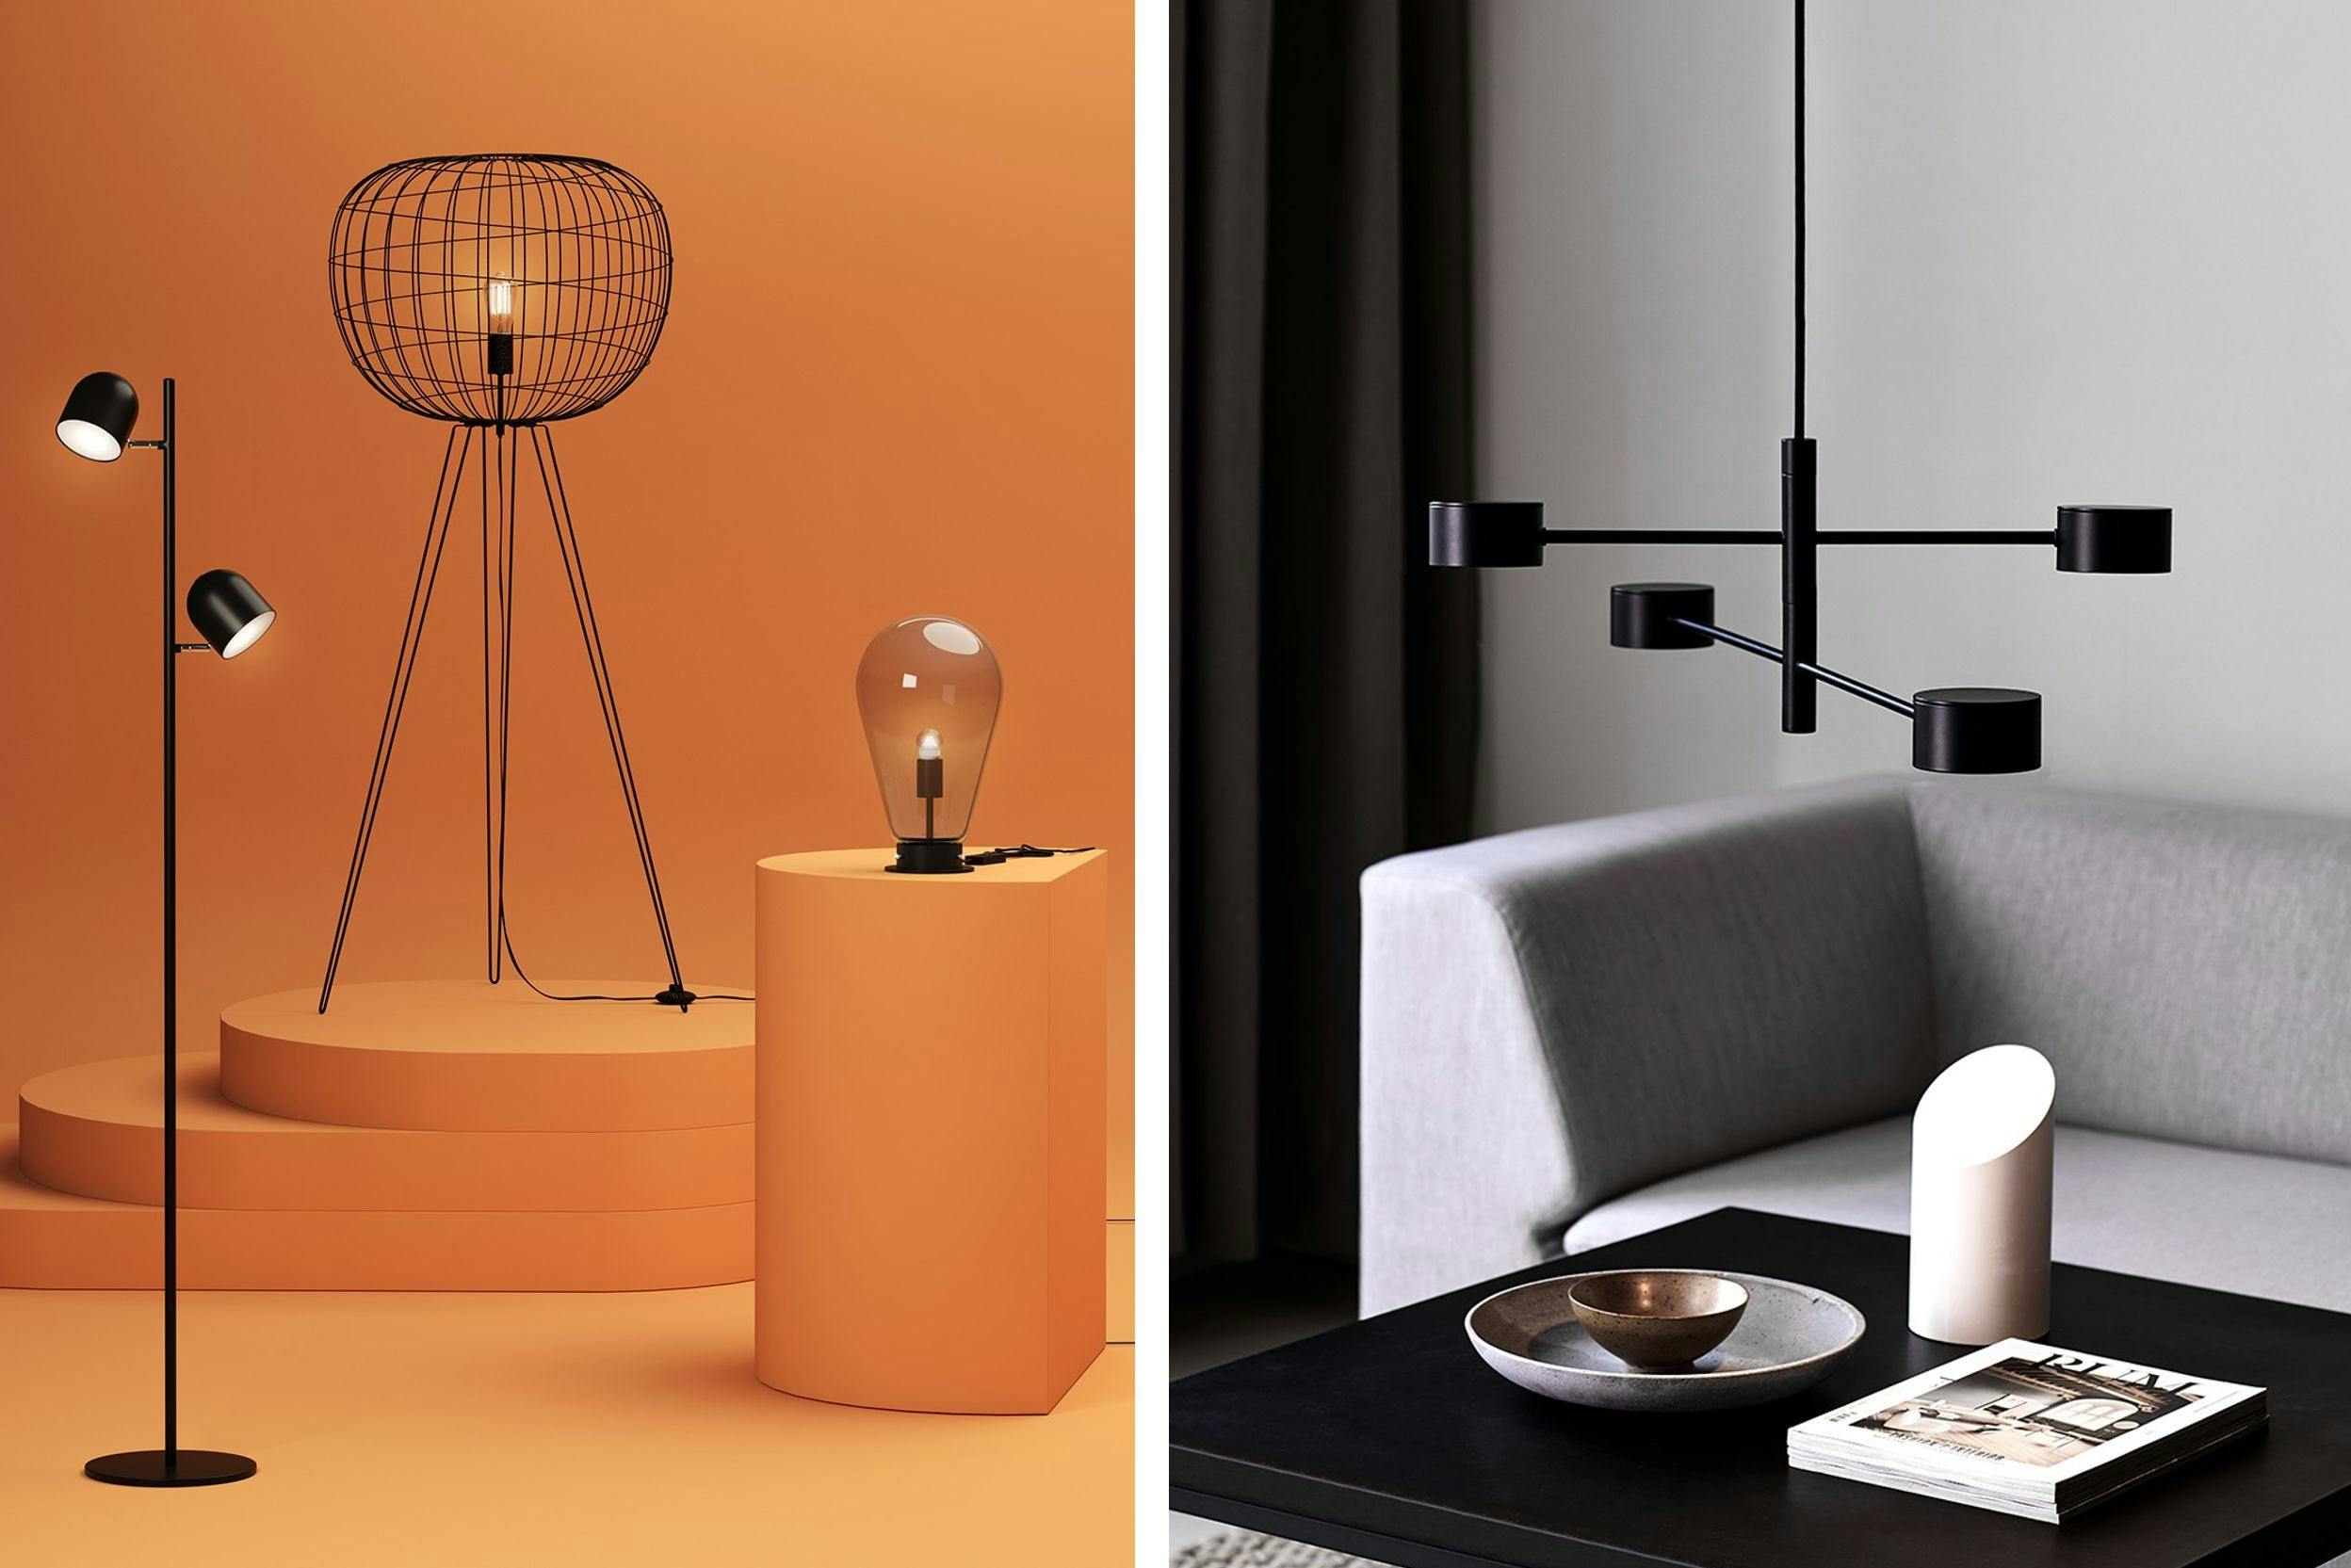 Deux photos de lampes : l'une de trois lampes de styles différents, exposées sur fond orange, et la seconde est une suspension noire au-dessus d'une table noire